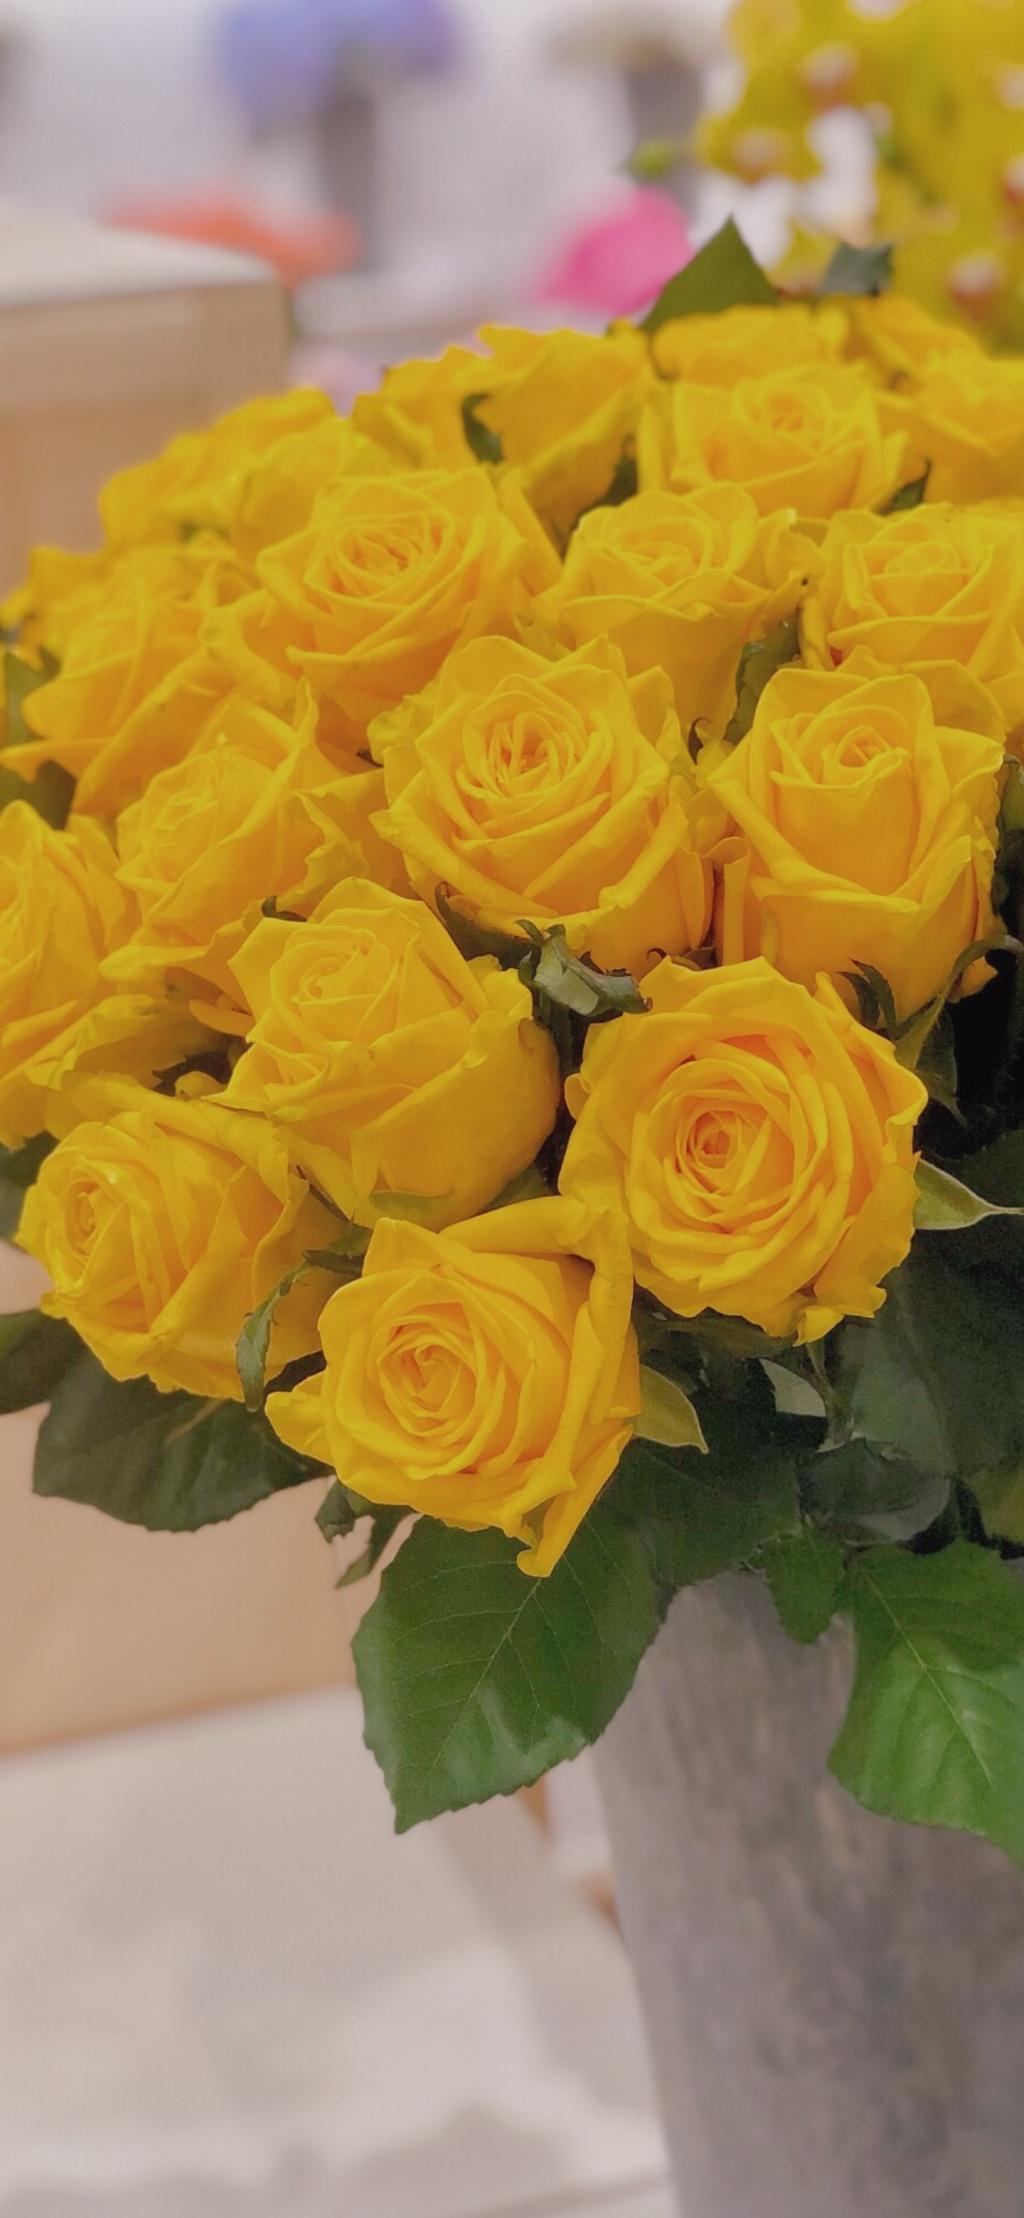 鲜艳优美的黄玫瑰